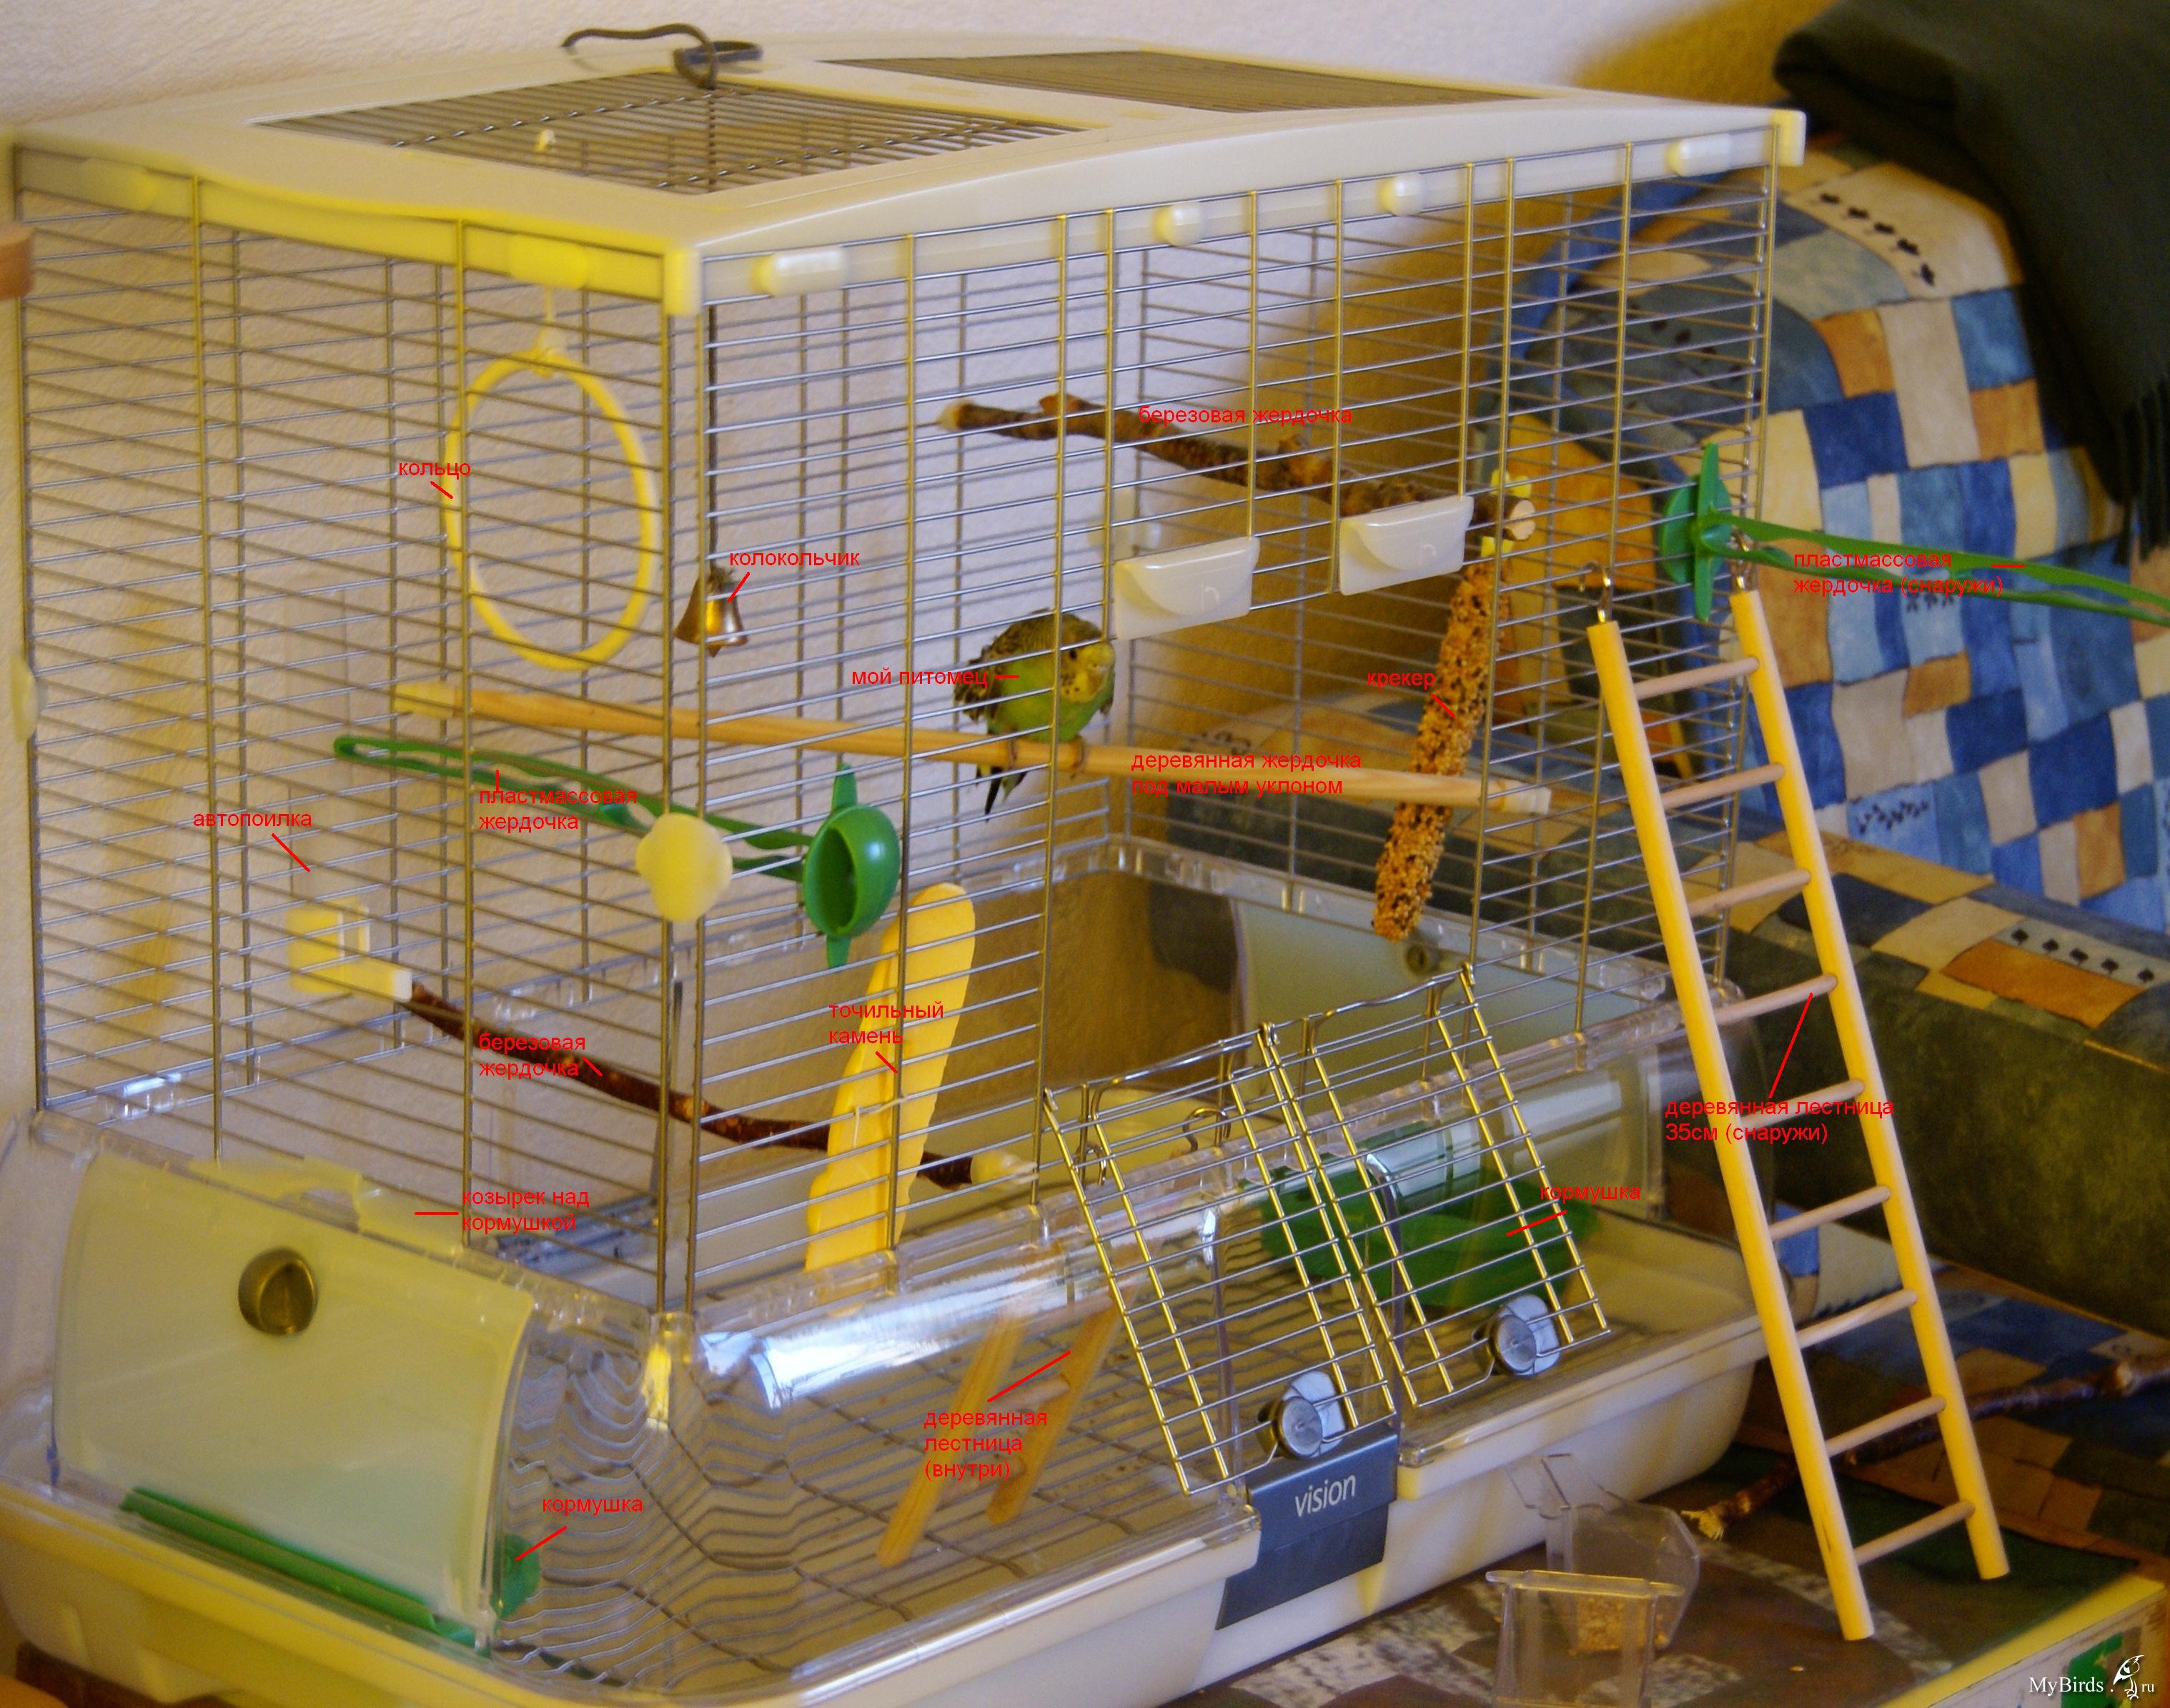 Как загнать попугая в клетку просто и быстро, не травмируя птицу